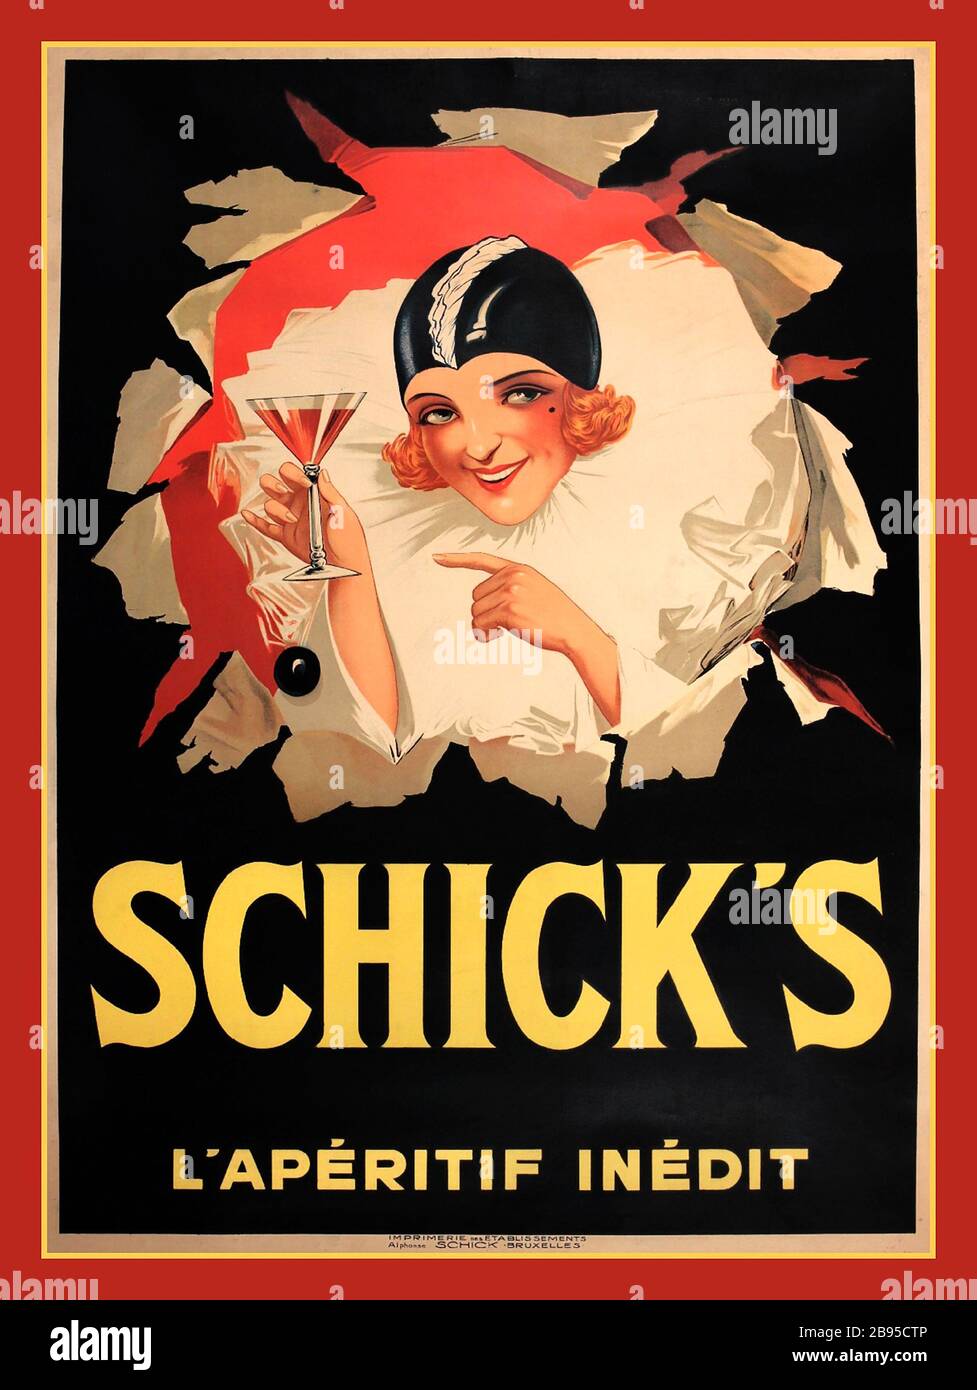 AFFICHE rétro DE SCHICK sur les boissons alcoolisées dans les années 1930 ' Schick's l'apéritif Inedit ' Nouvelle affiche de style art déco apéritif imprimée à Bruxelles en 1930 Banque D'Images